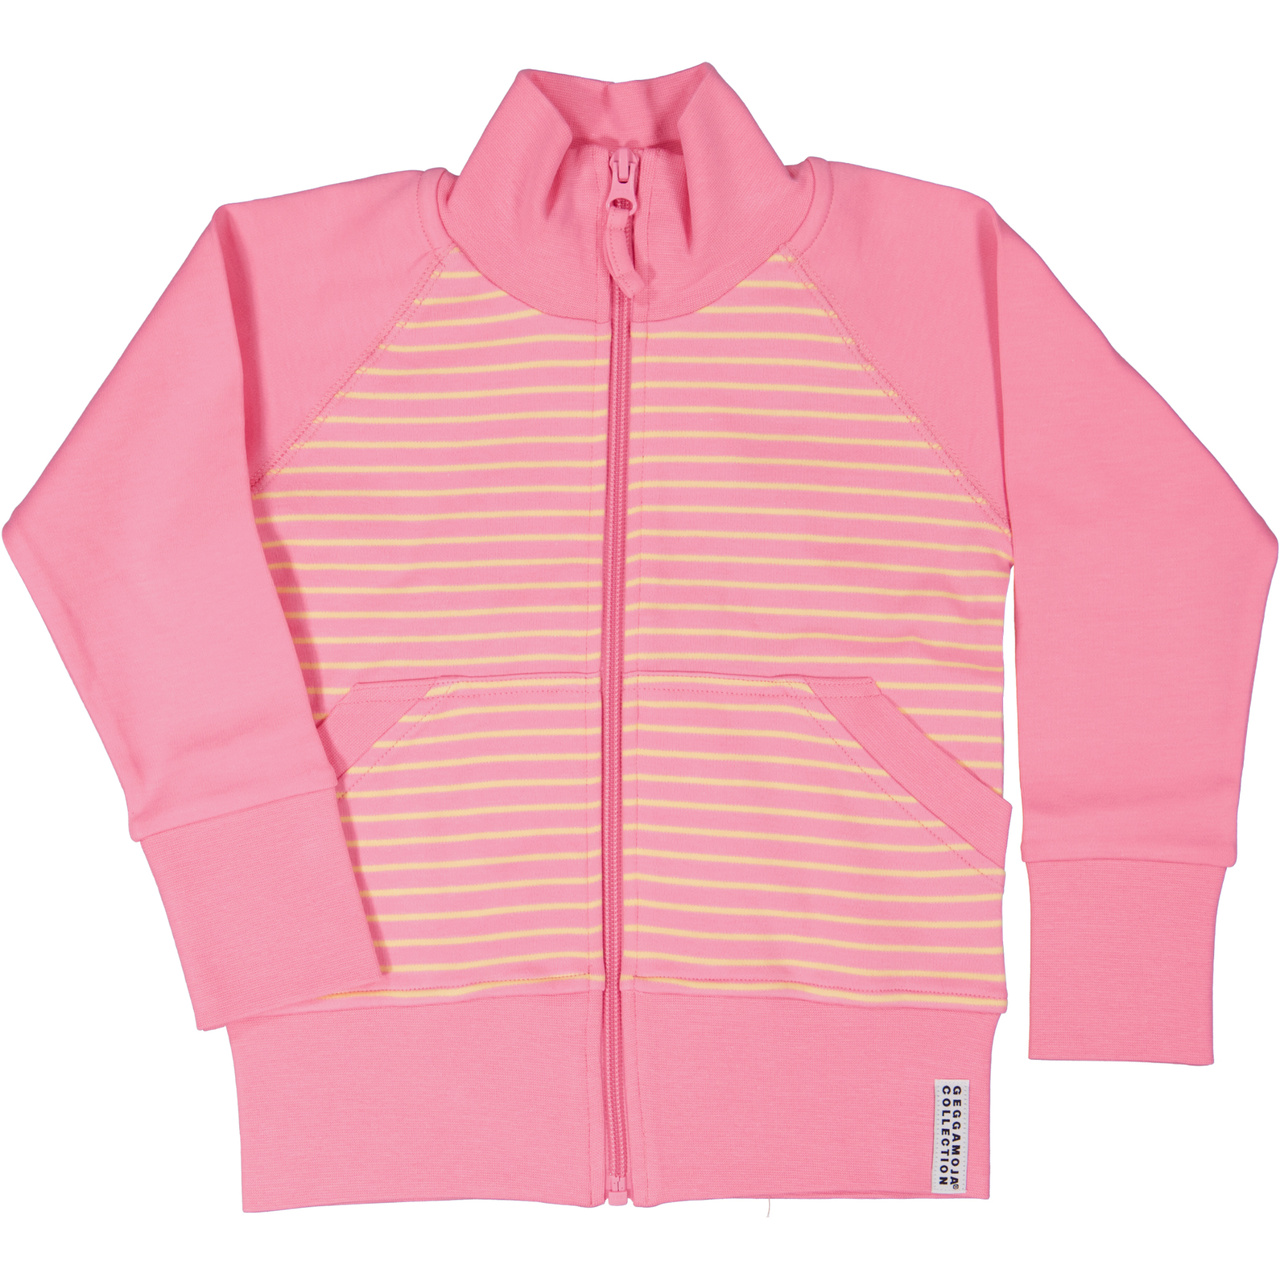 Zip sweater Pink/yellow  86/92